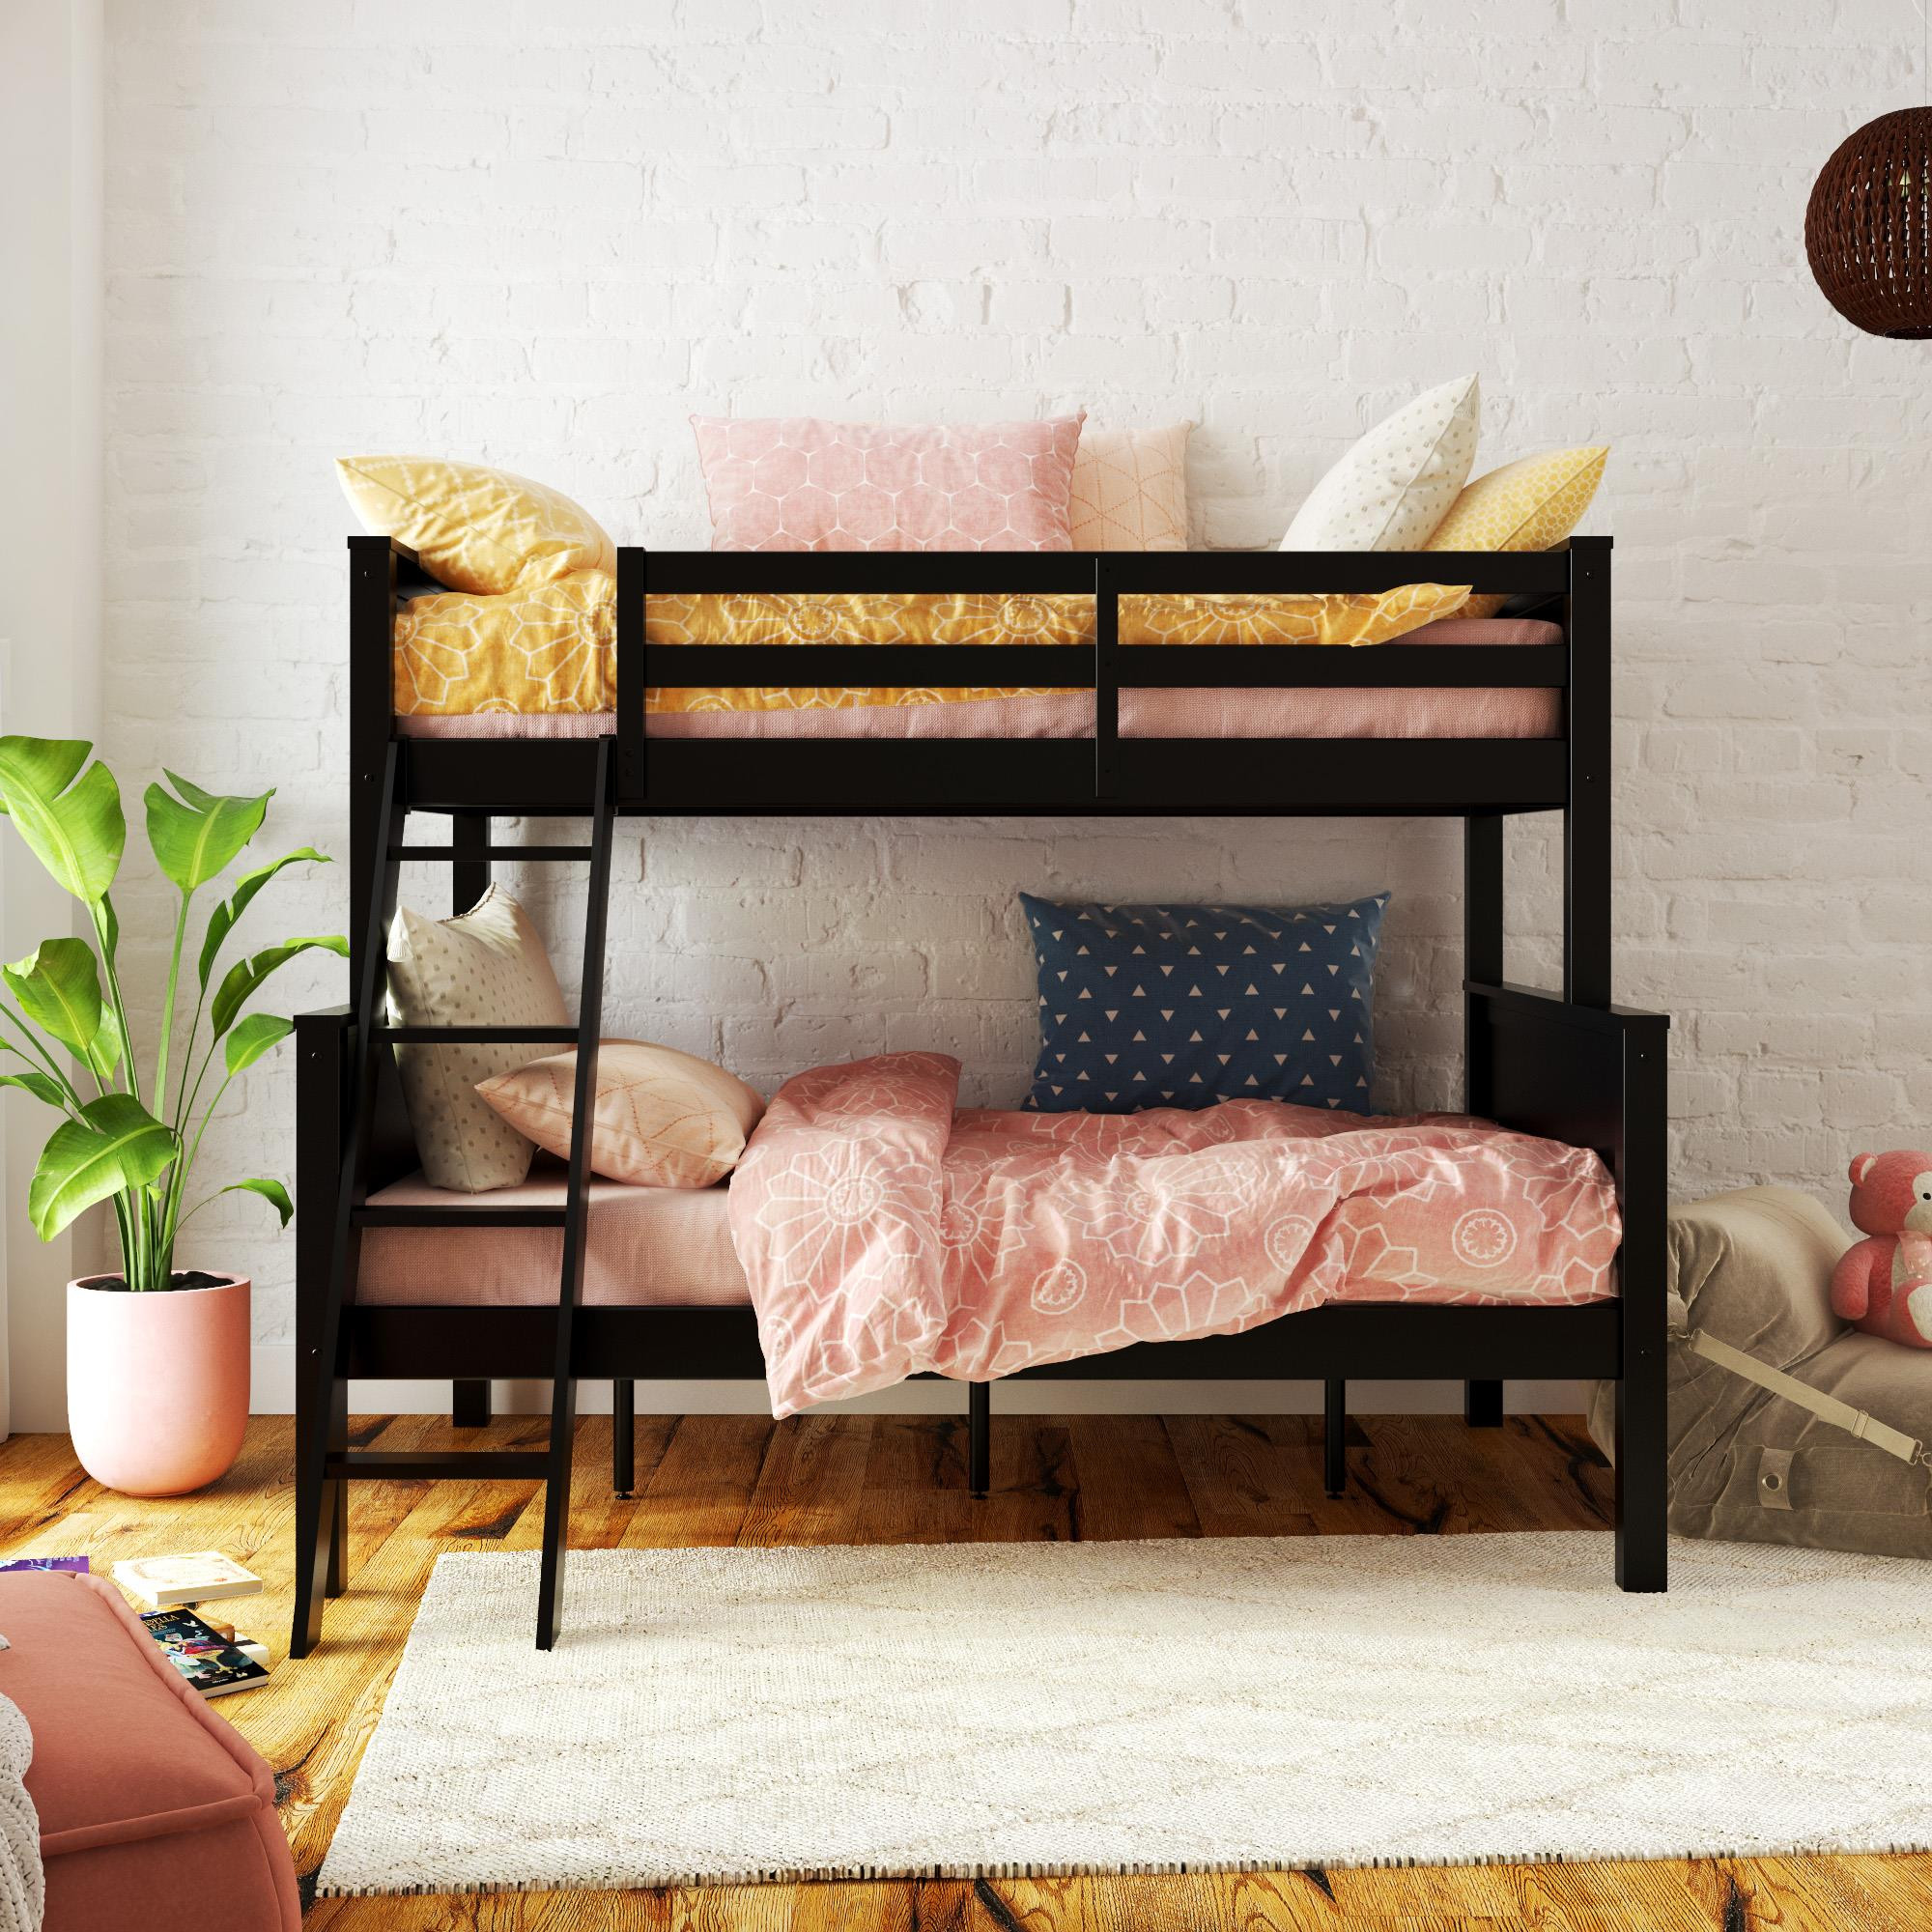 Walmart Kids Bedroom Furniture
 Your Zone Twin Over Full Wood Bunk Bed Kids Bedroom